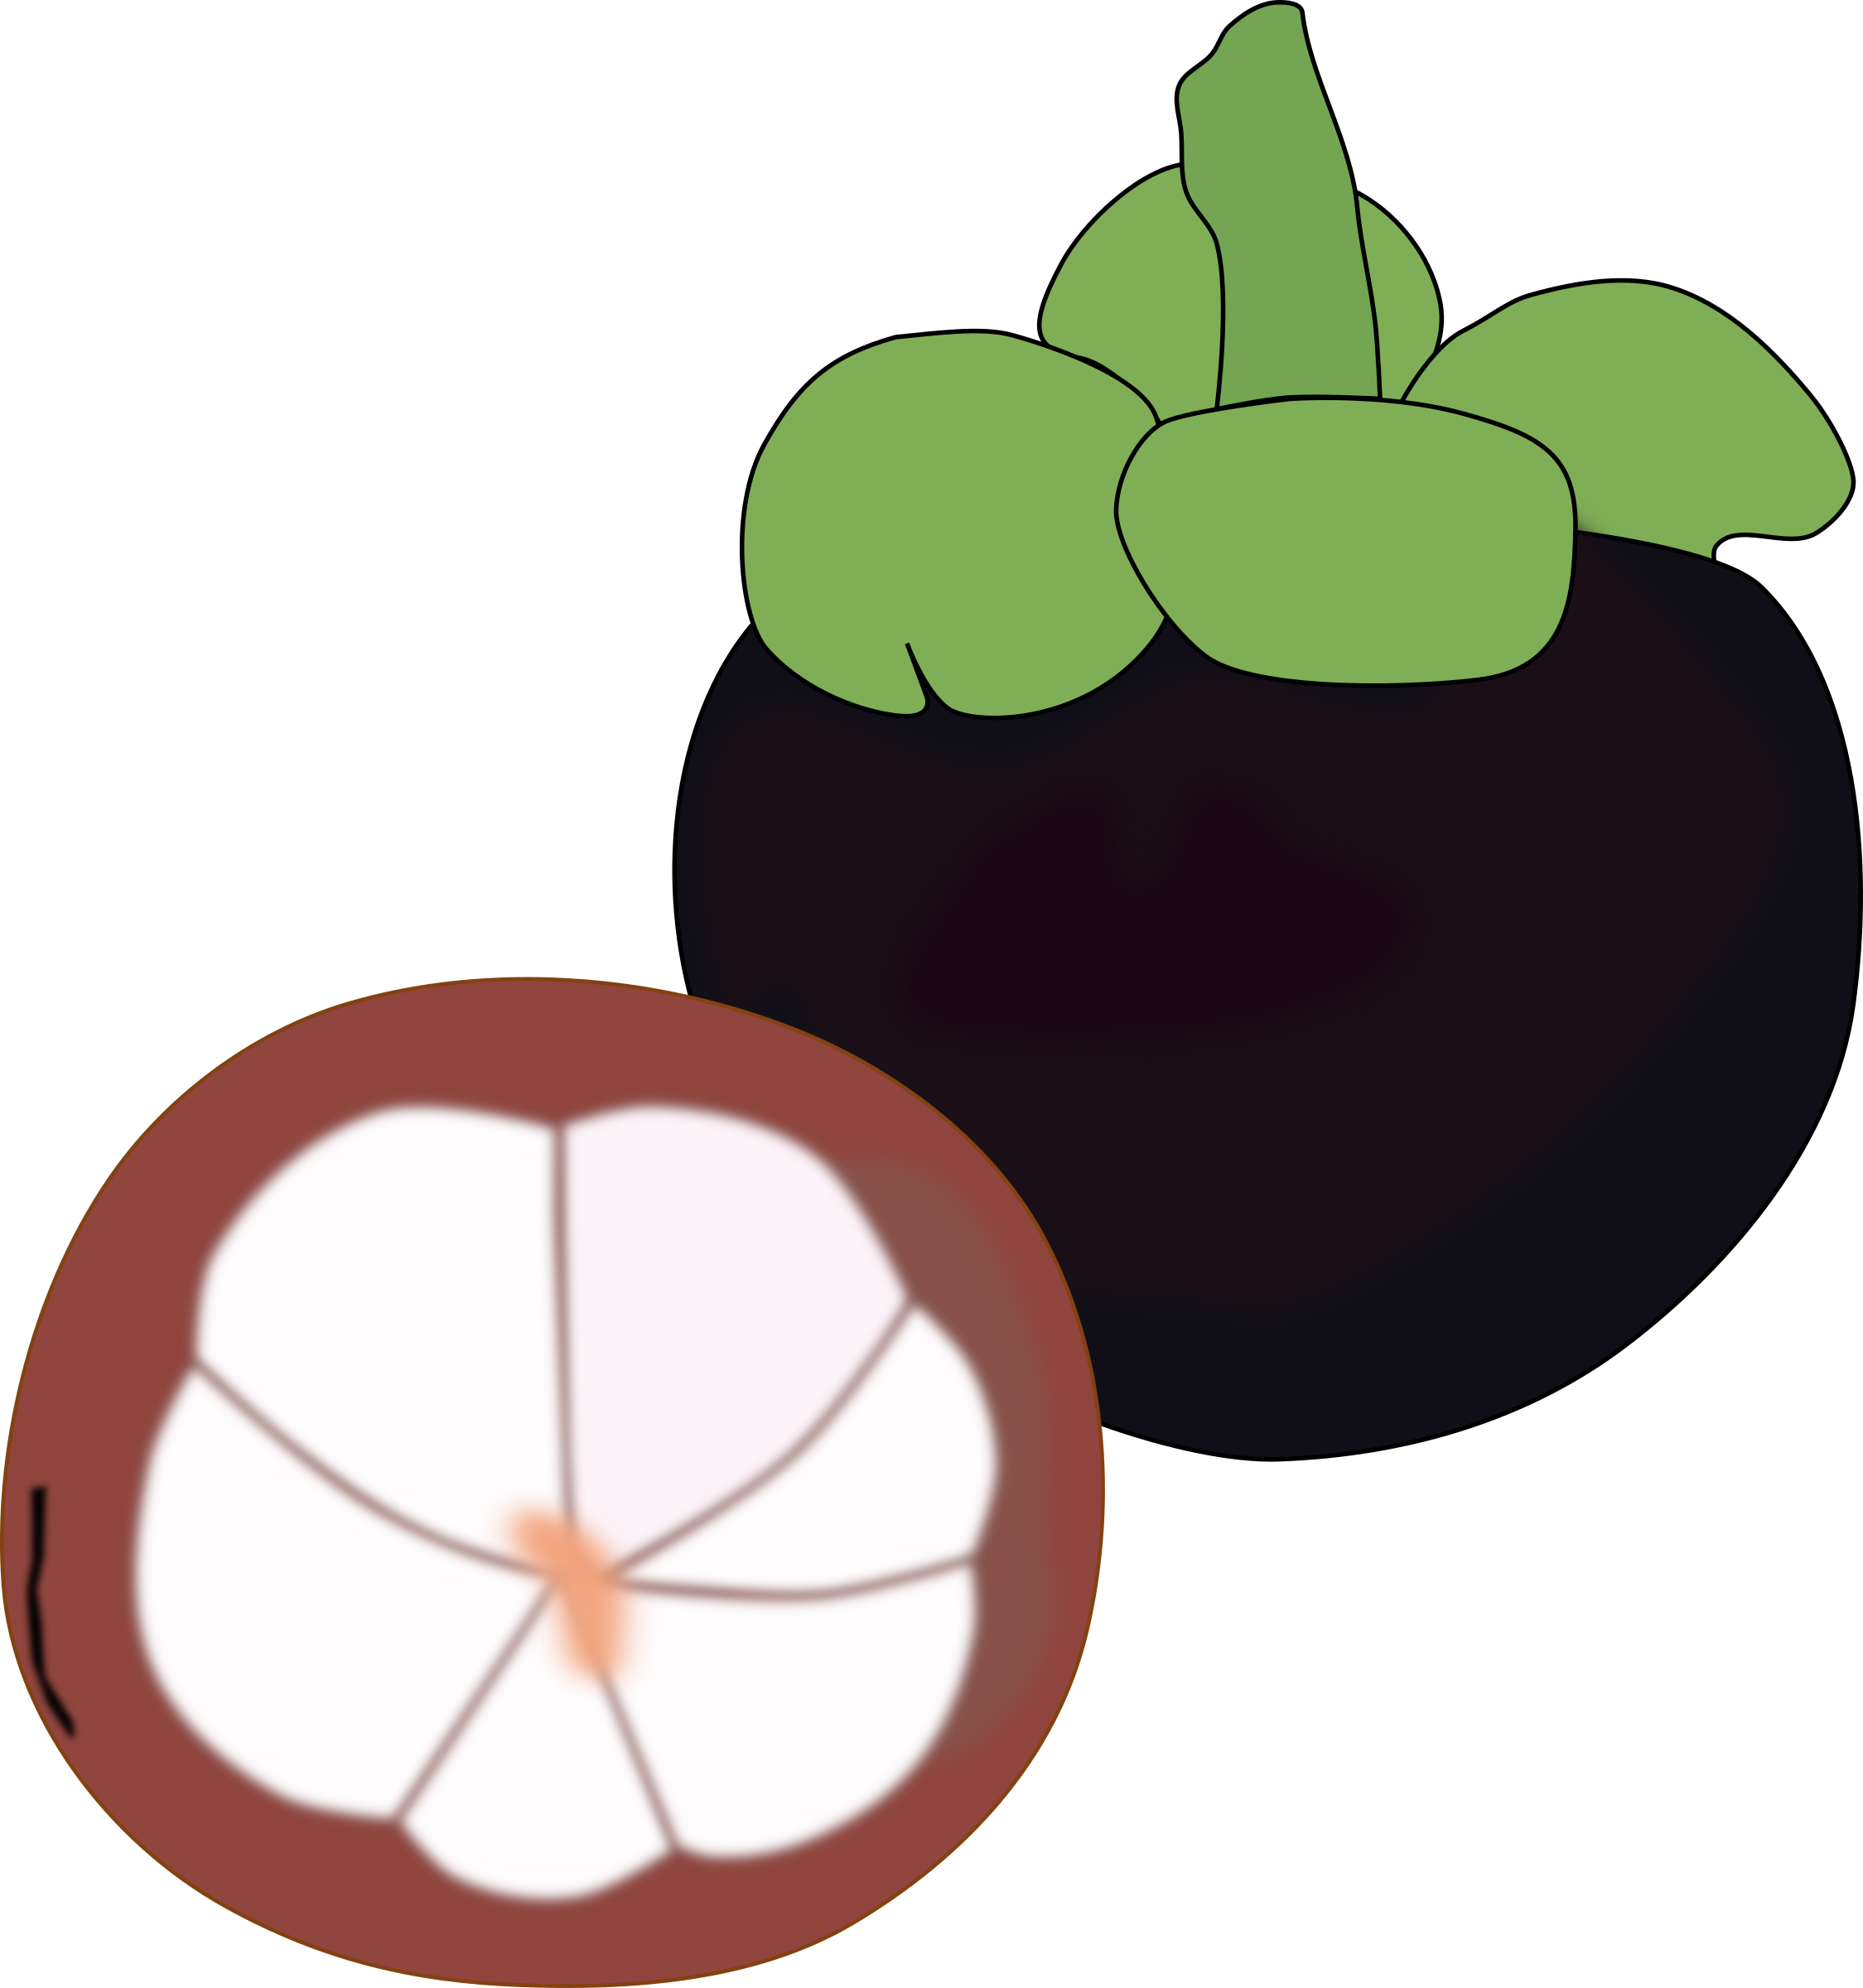 Flat, Fruit, Fuzzy - Mangosteen Clipart Png (2249x2400)